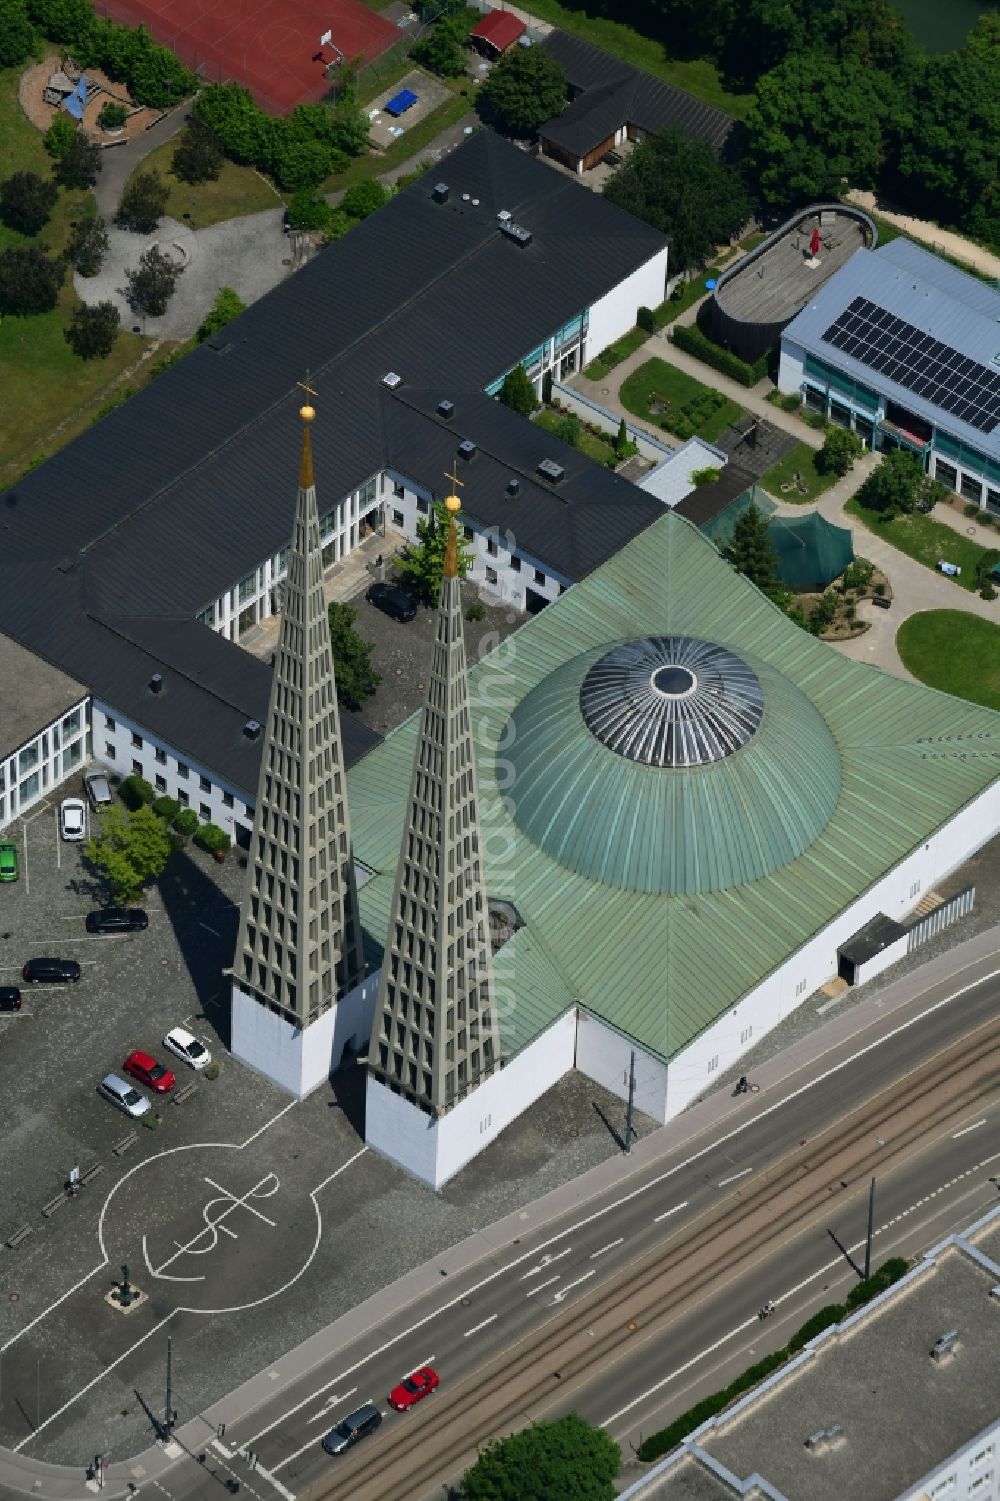 Luftbild Augsburg - Kirchengebäude der Kirche Don Bosco Herrenbach Augsburg in Augsburg im Bundesland Bayern, Deutschland